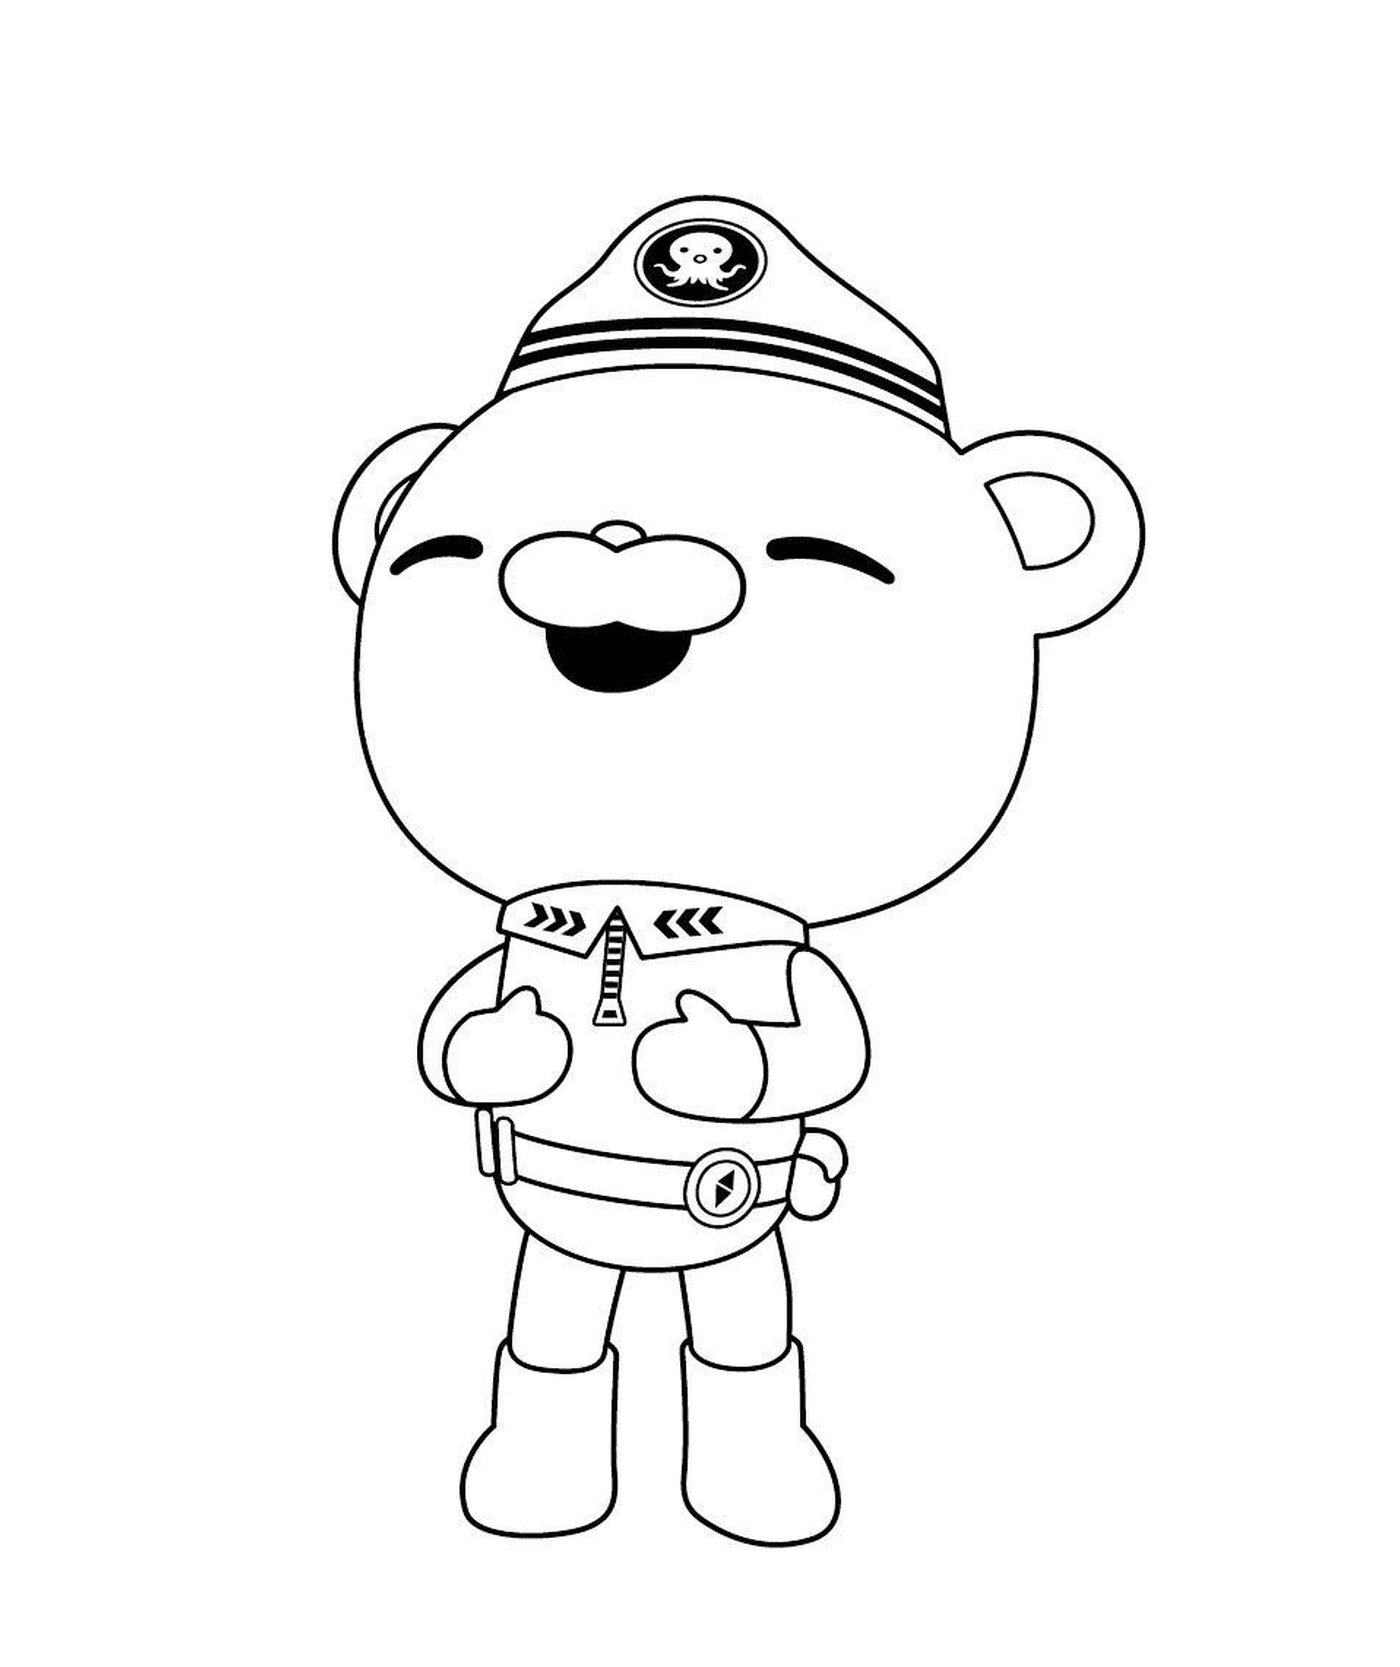  Capitano Barnacle degli ottanauti, un orso in uniforme 